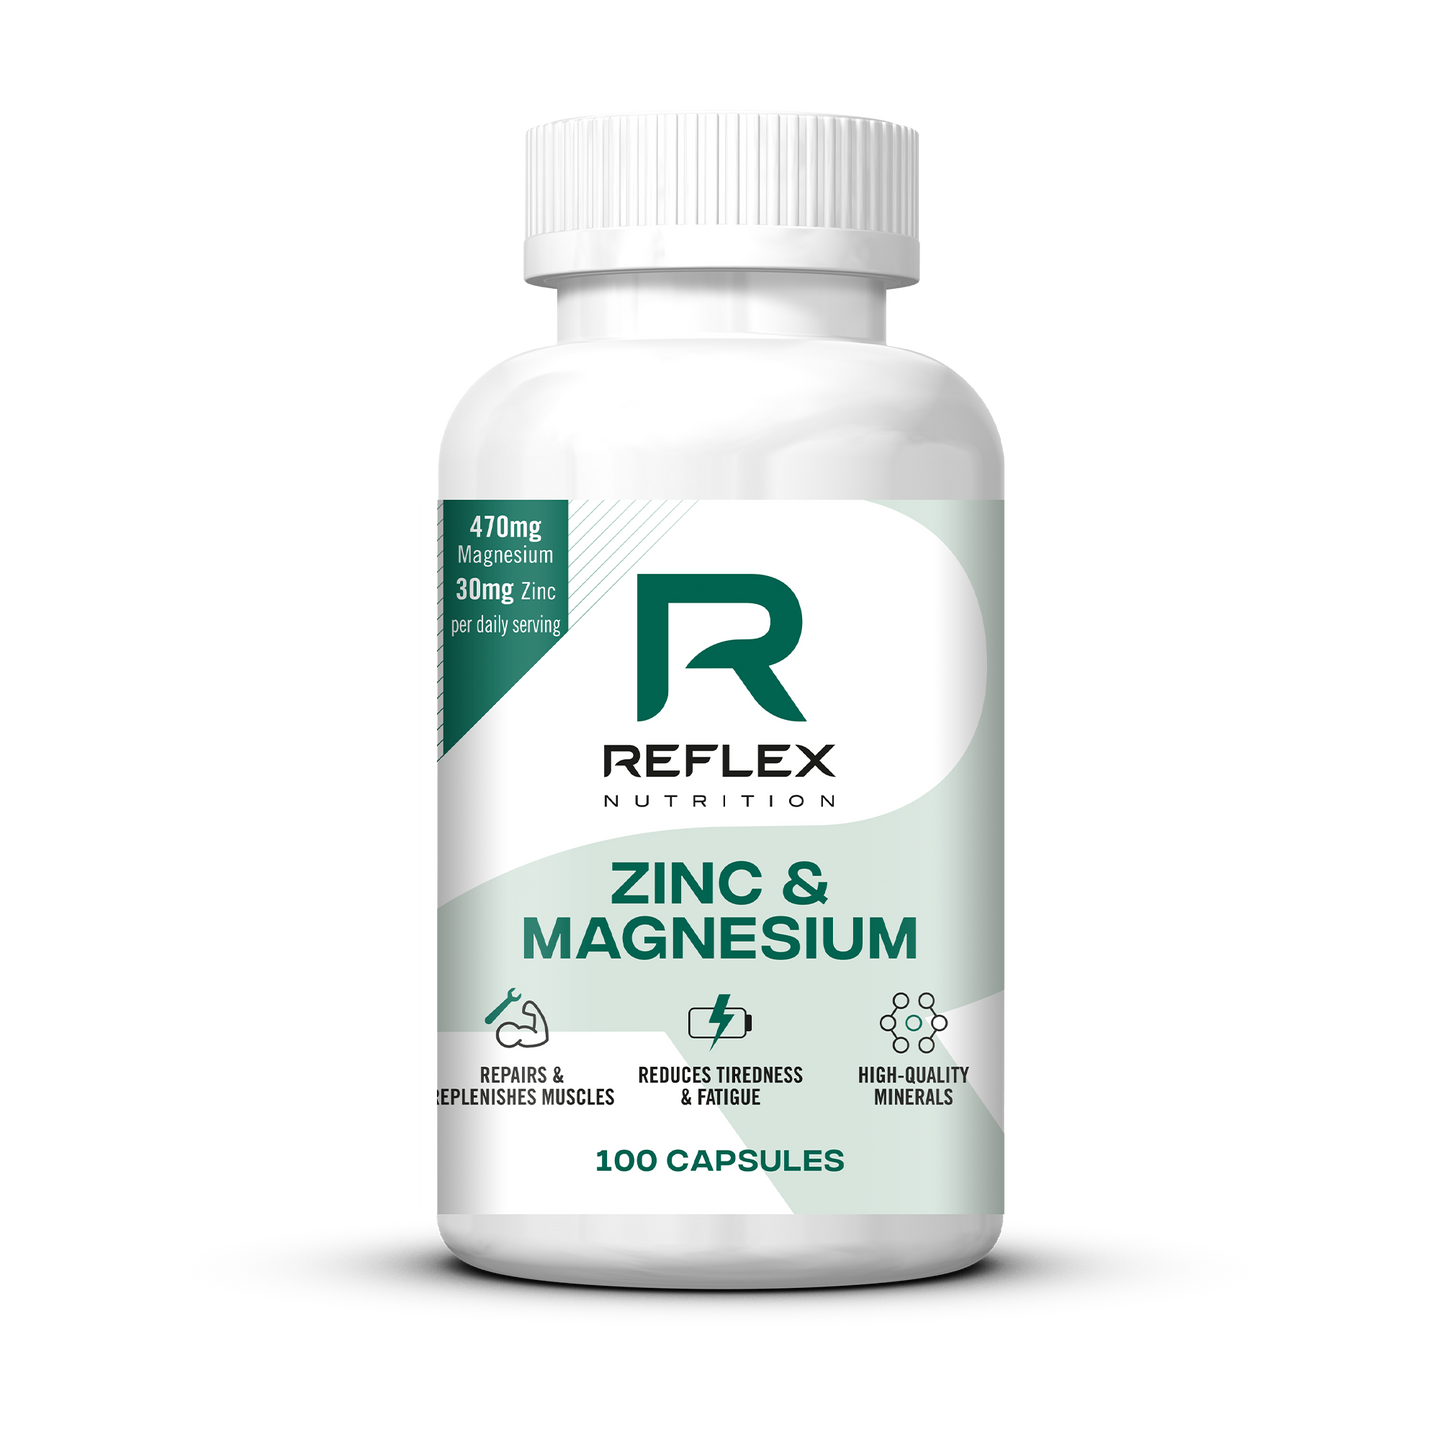 Reflex Nutrition Zinc & Magnesium - 100 Capsules